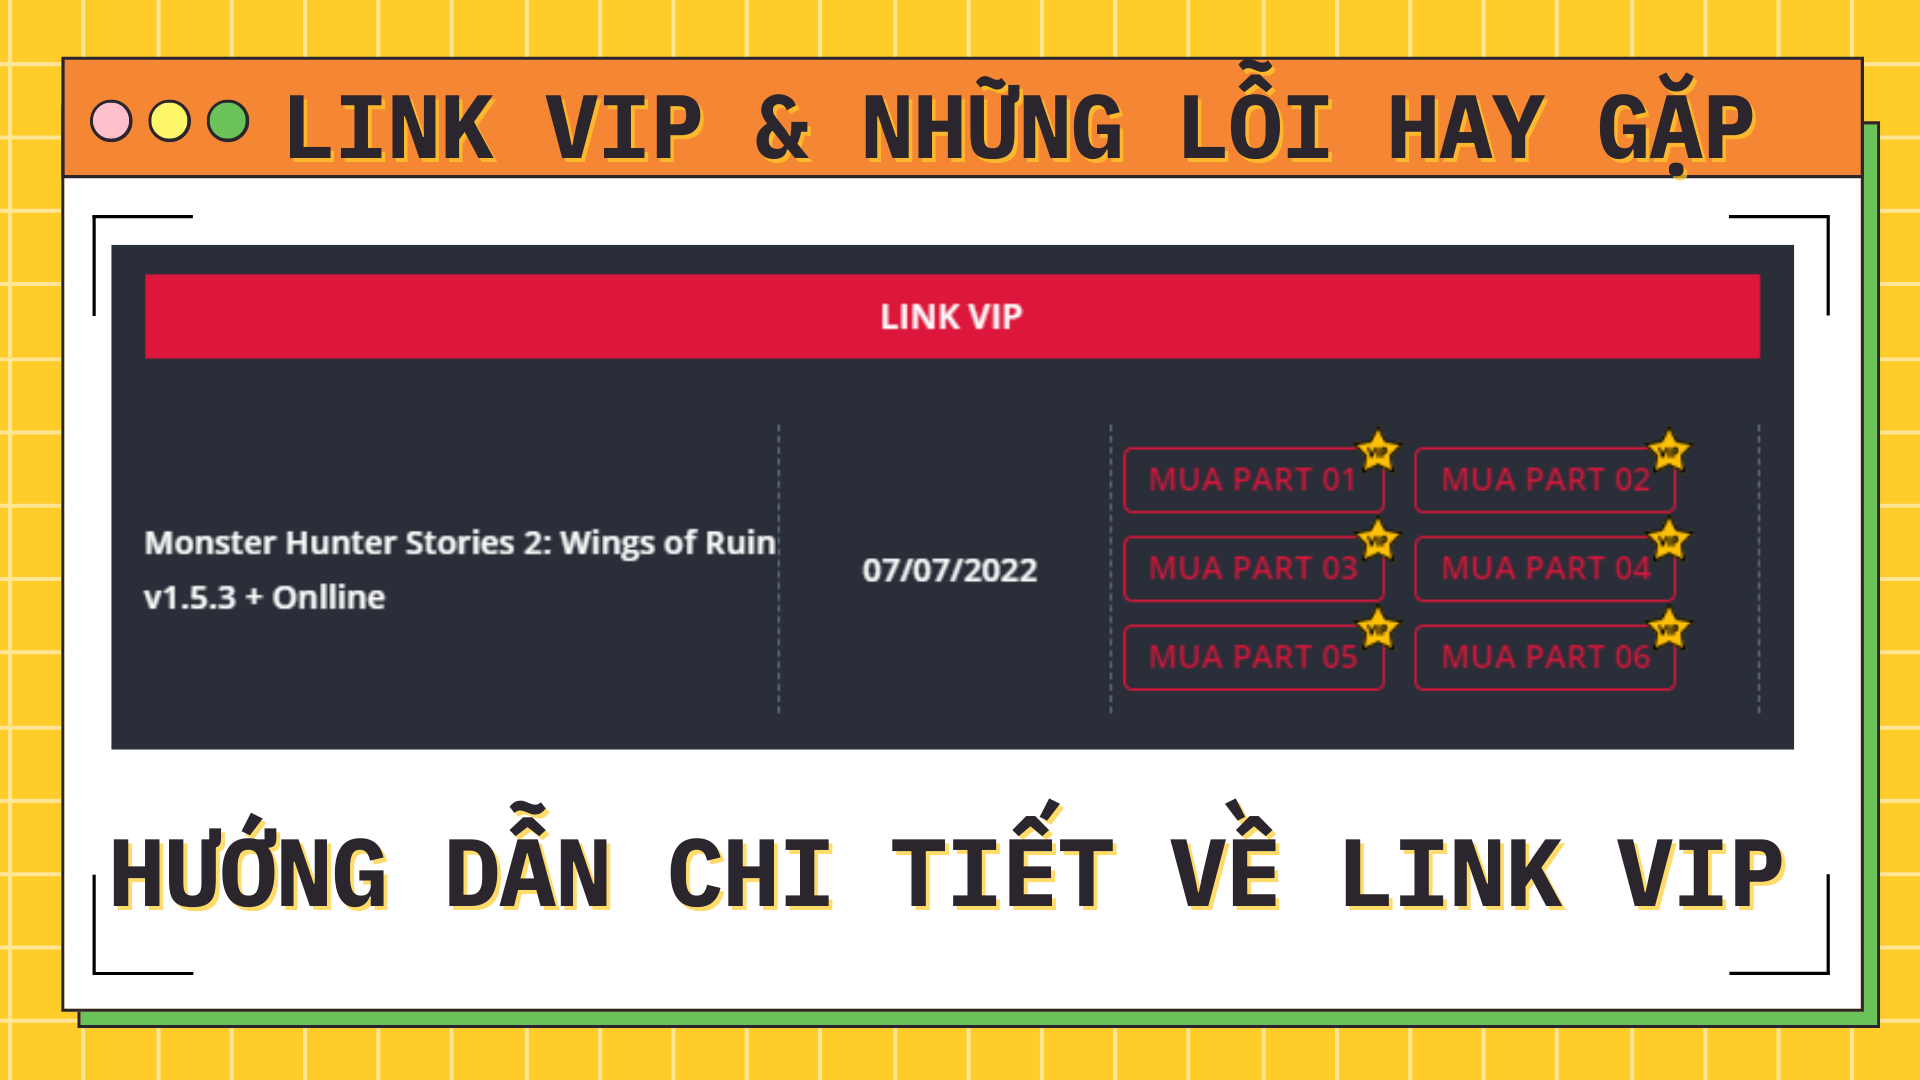 Tổng hợp những lỗi về LINK VIP & cách khắc phục